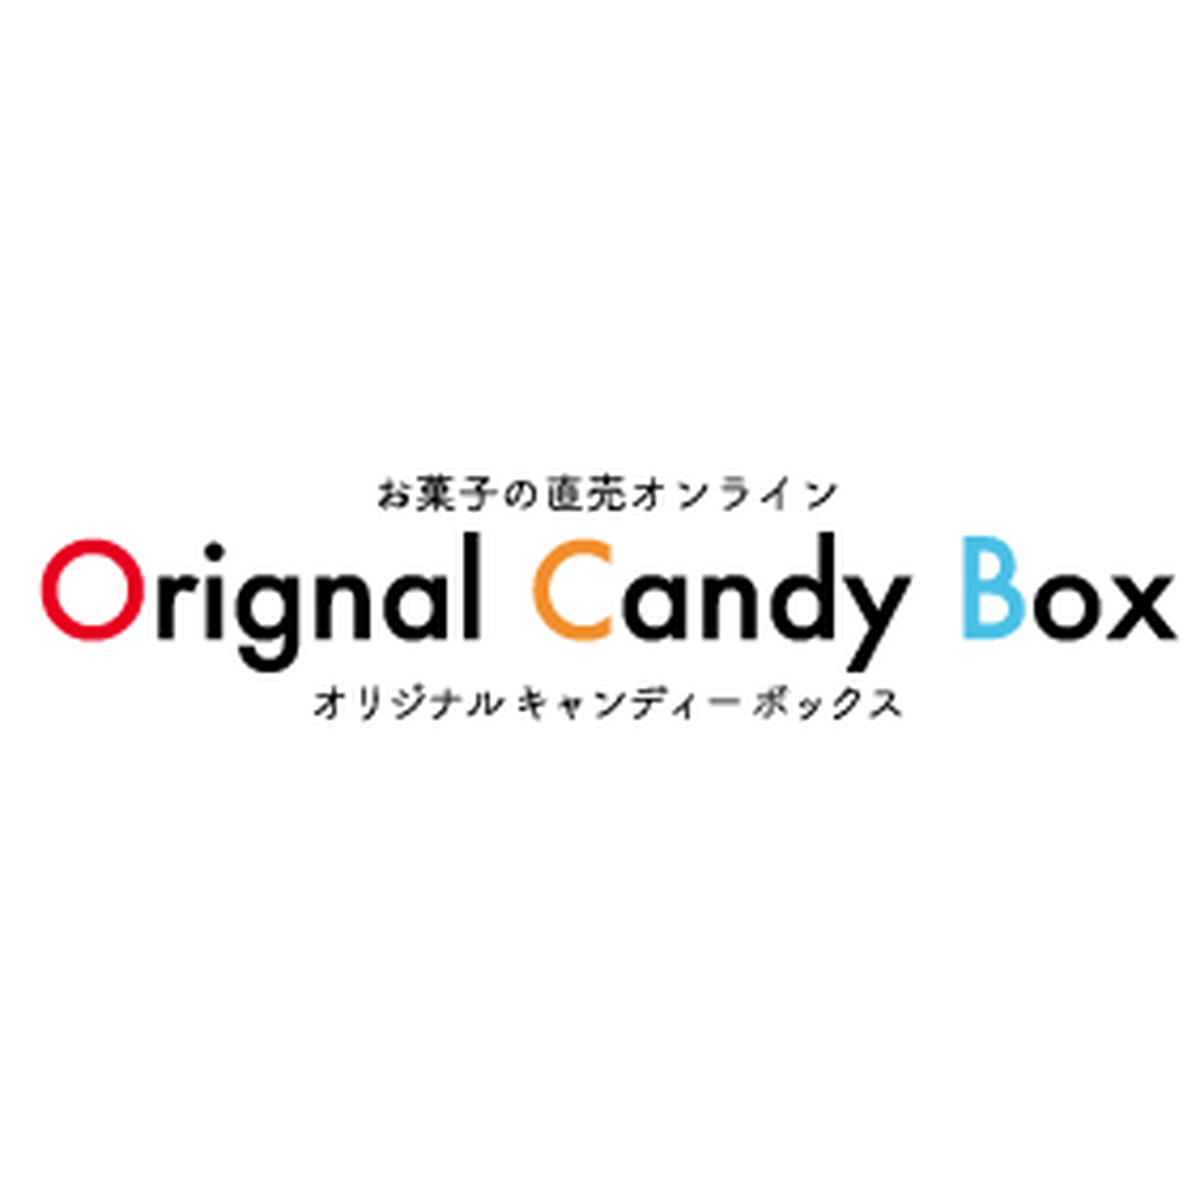 ジェリービーンズ ゼリー お菓子の直売オンライン オリジナルキャンディーボックス